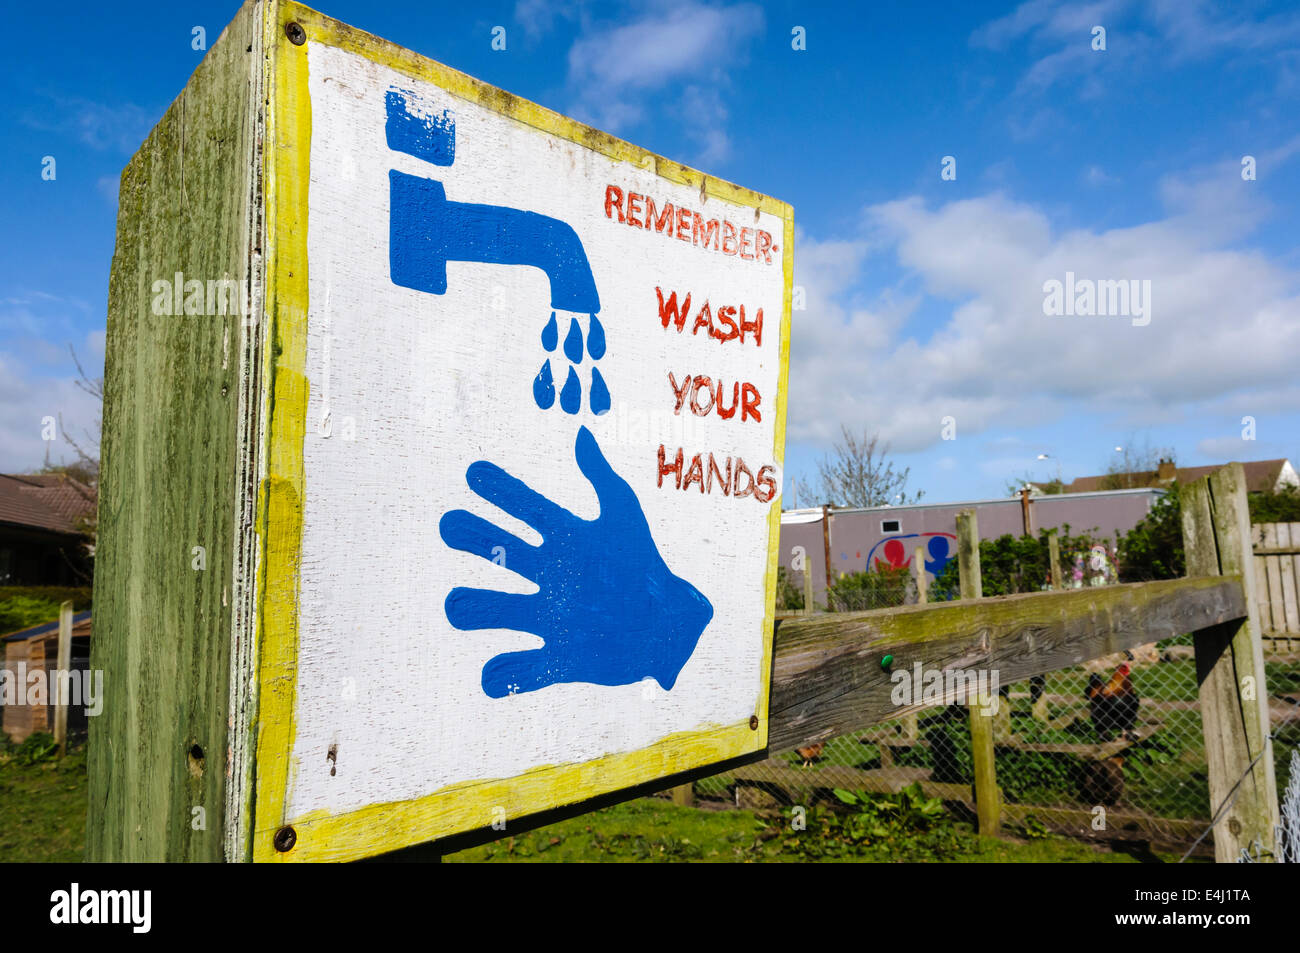 Melden Sie sich zu waschen Sie ihre Hände an einem offenen Hof erinnern. Stockfoto